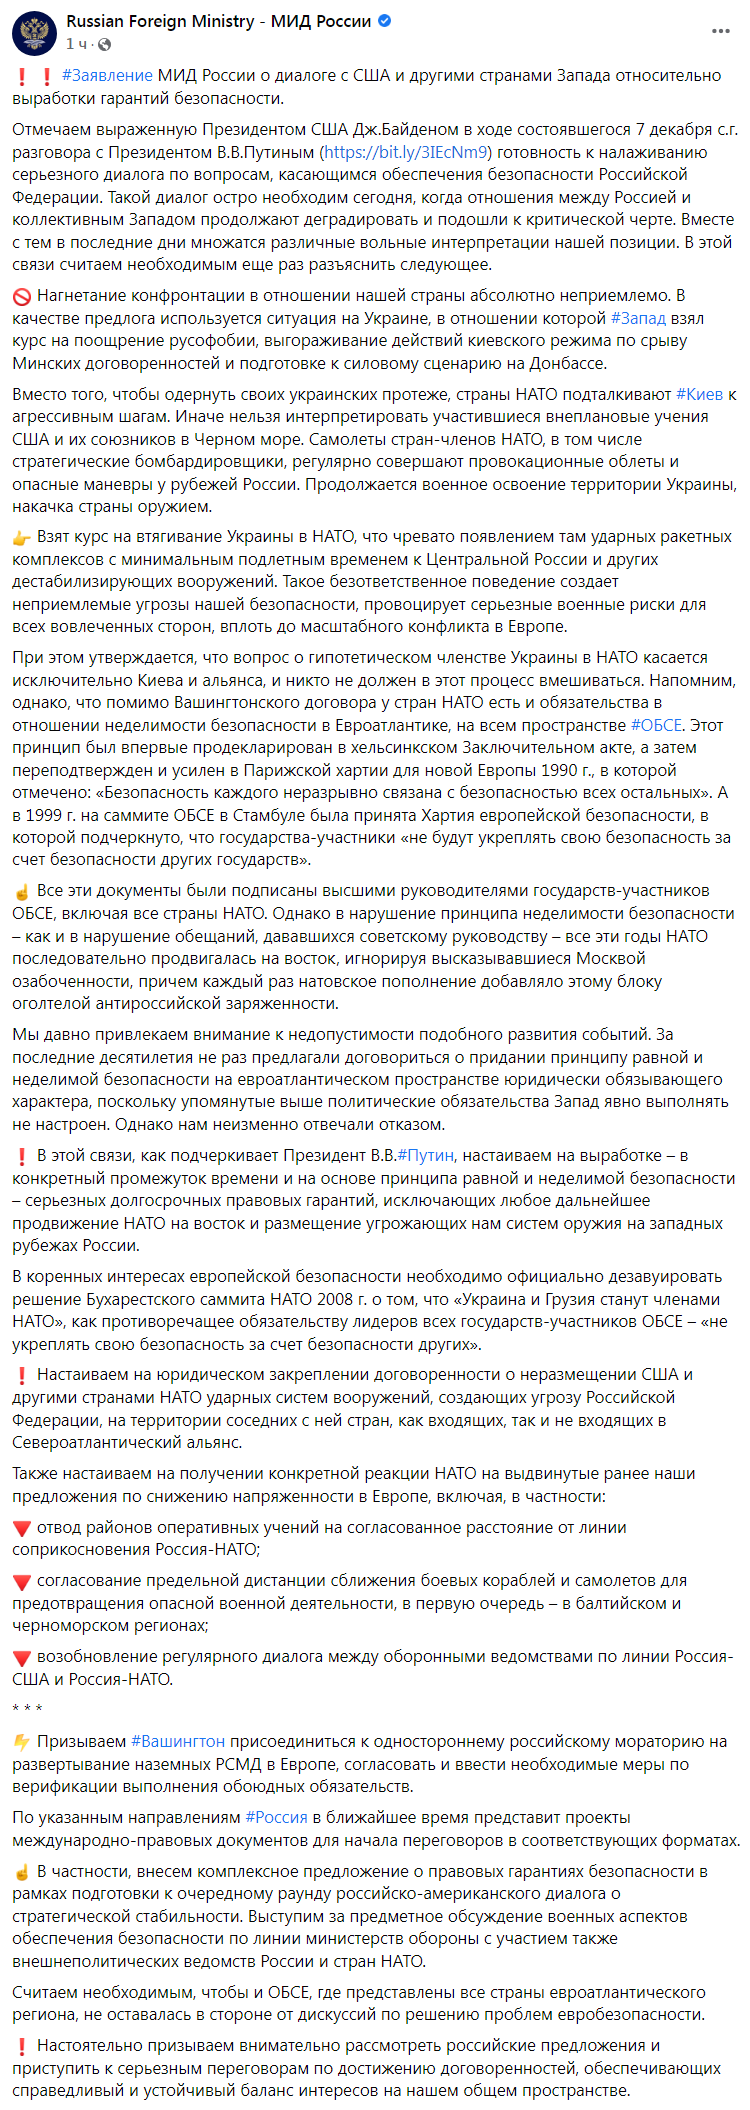 Скриншот заявления МИД РФ